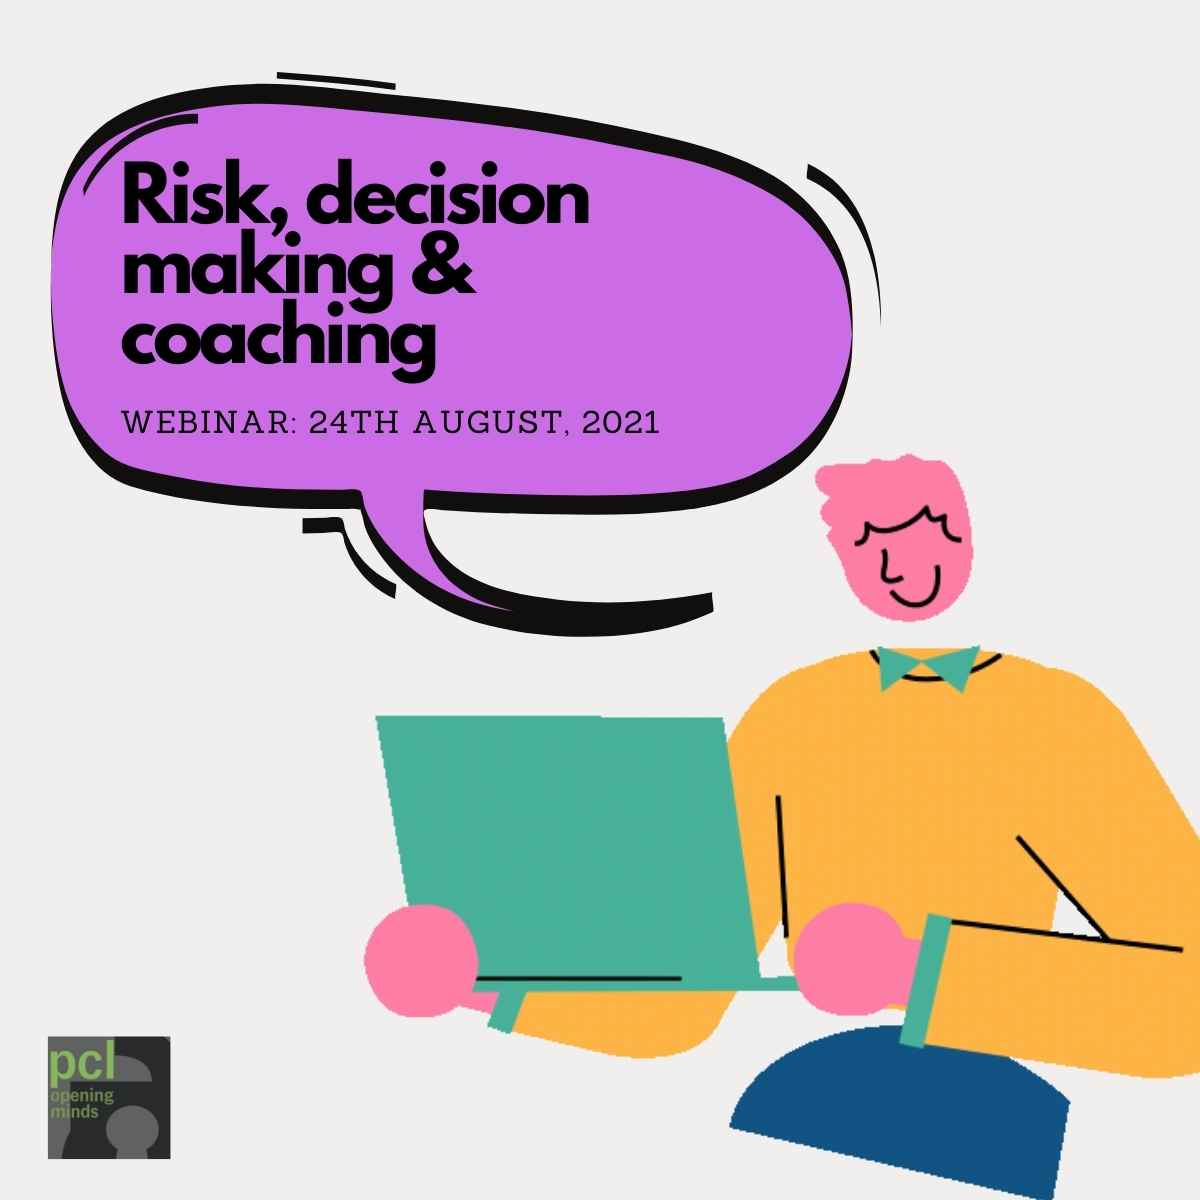 Risk and coaching webinar